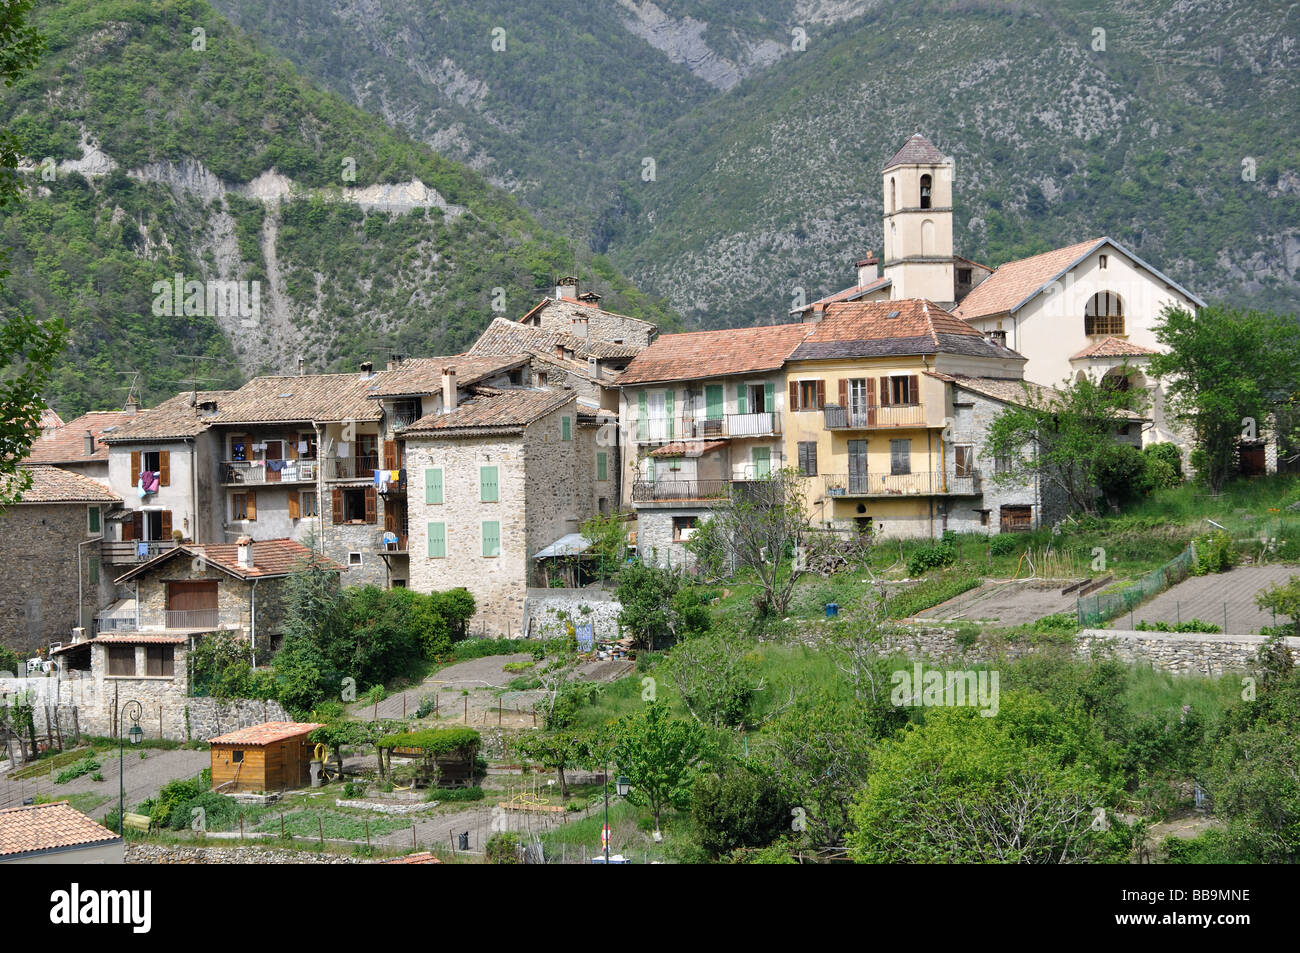 Le village de montagne de Marie sur Tinee dans les Alpes Maritimes, France Banque D'Images